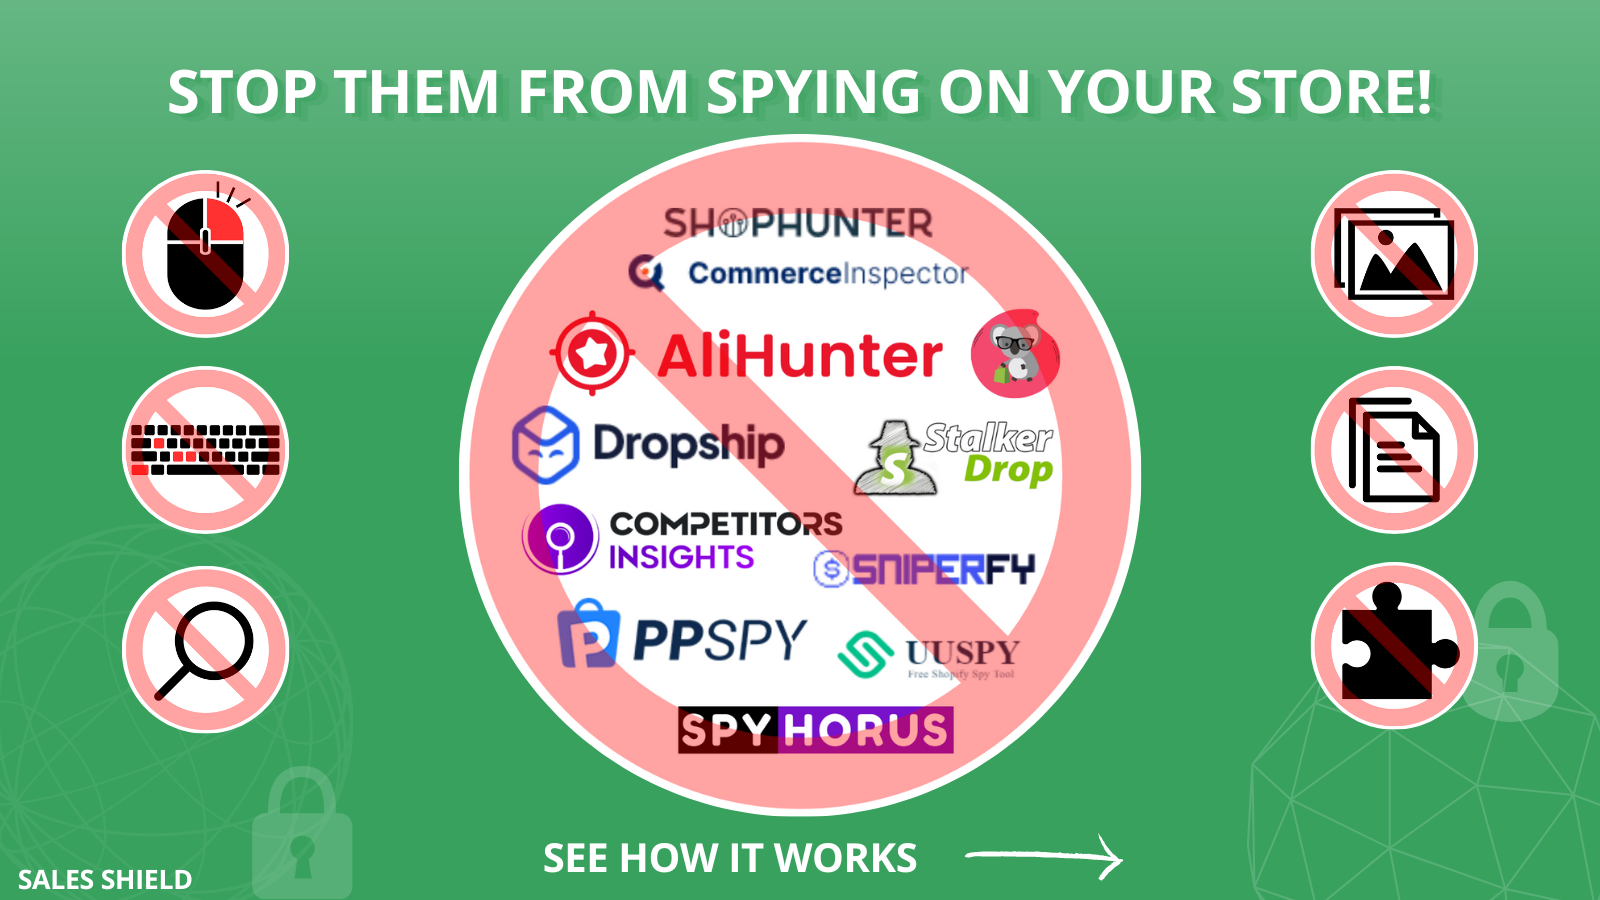 Arrêtez-les d'espionner votre boutique ! Shophunter, ppspy, uuspy